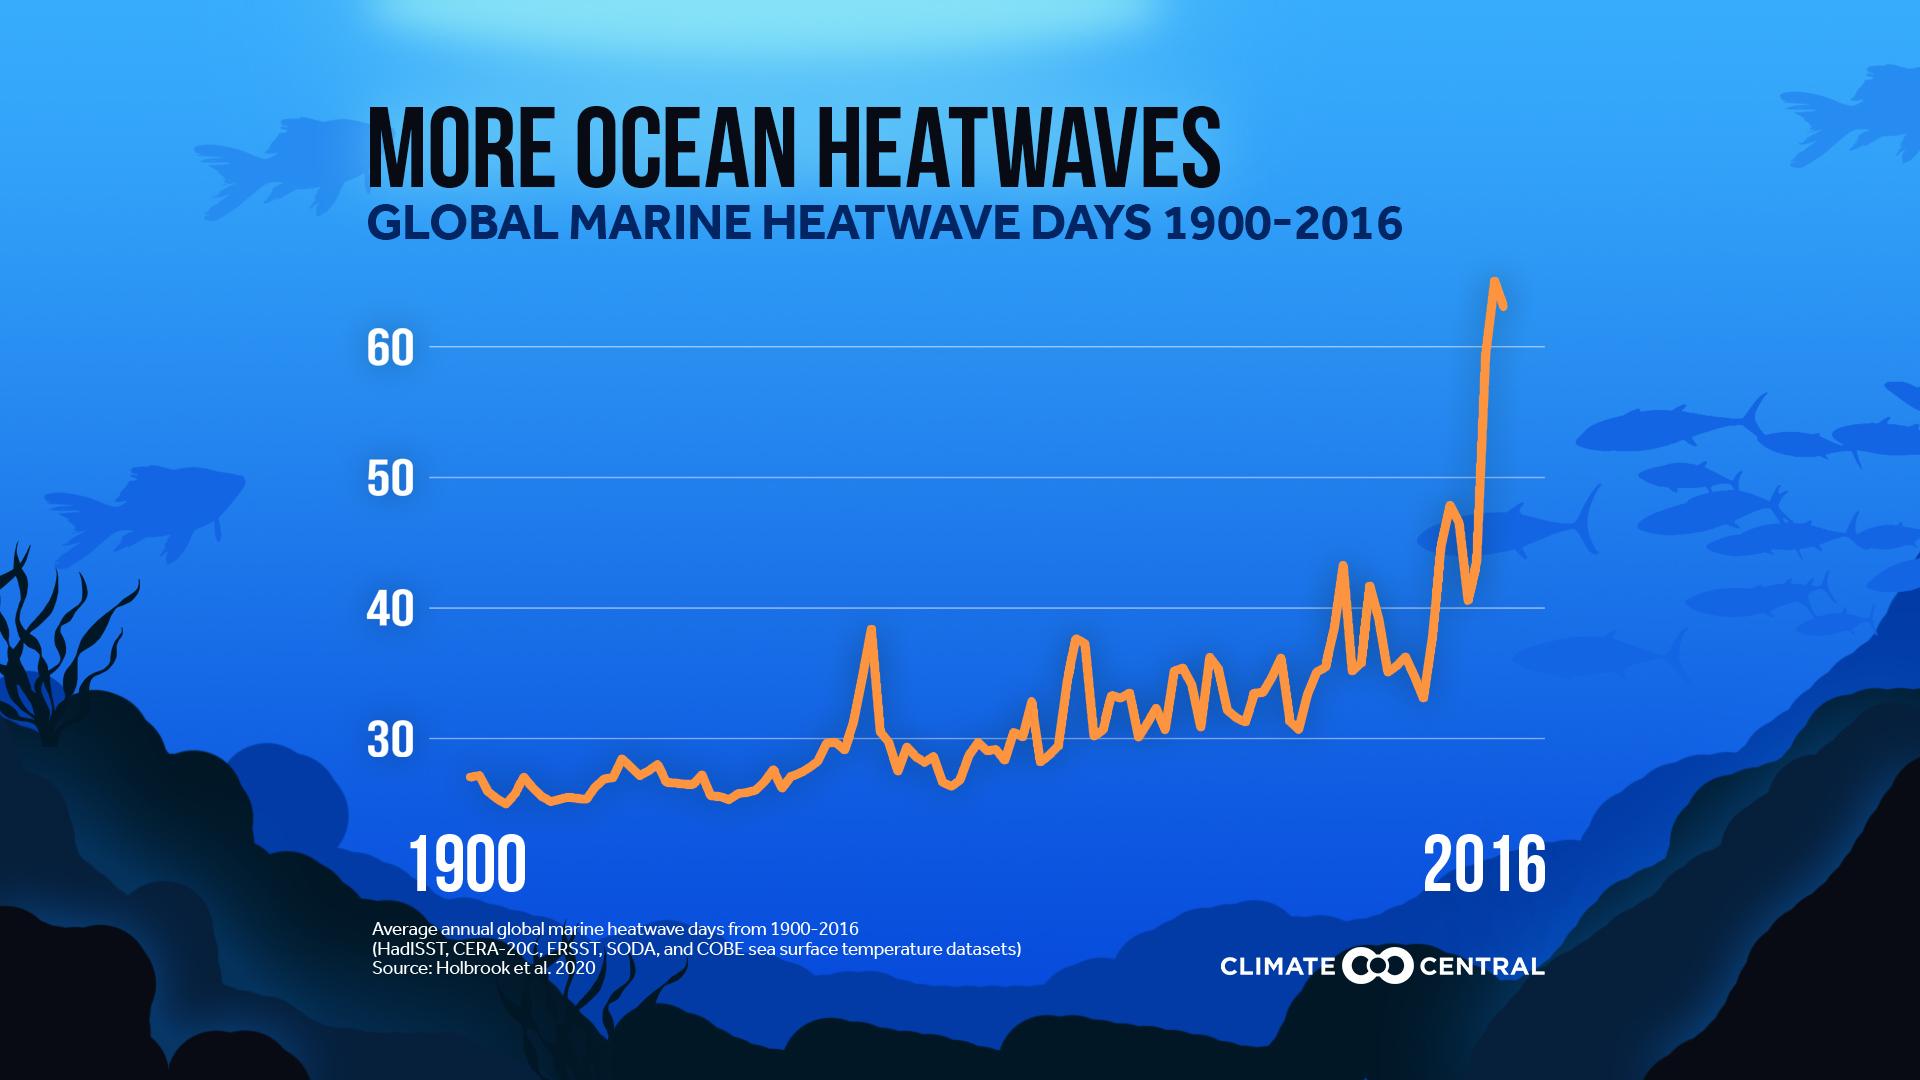 Global Marine Heatwave Days 1900-2016 - Ocean Heatwaves